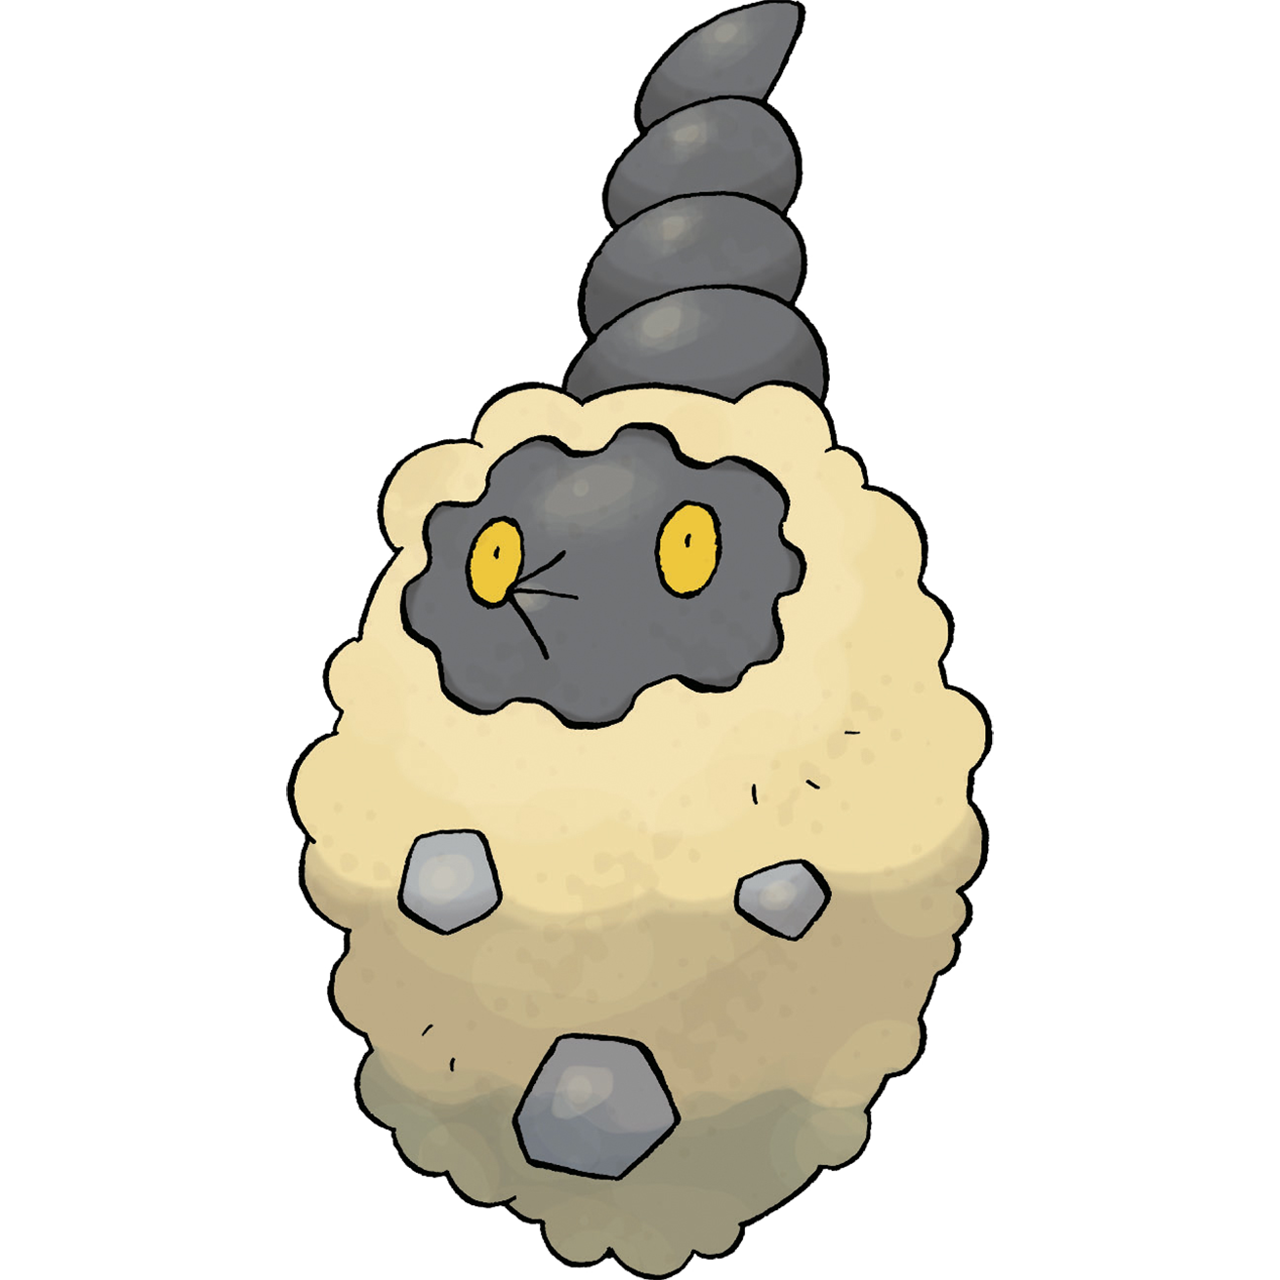 Burmy (Pokémon) - Bulbapedia, the community-driven Pokémon